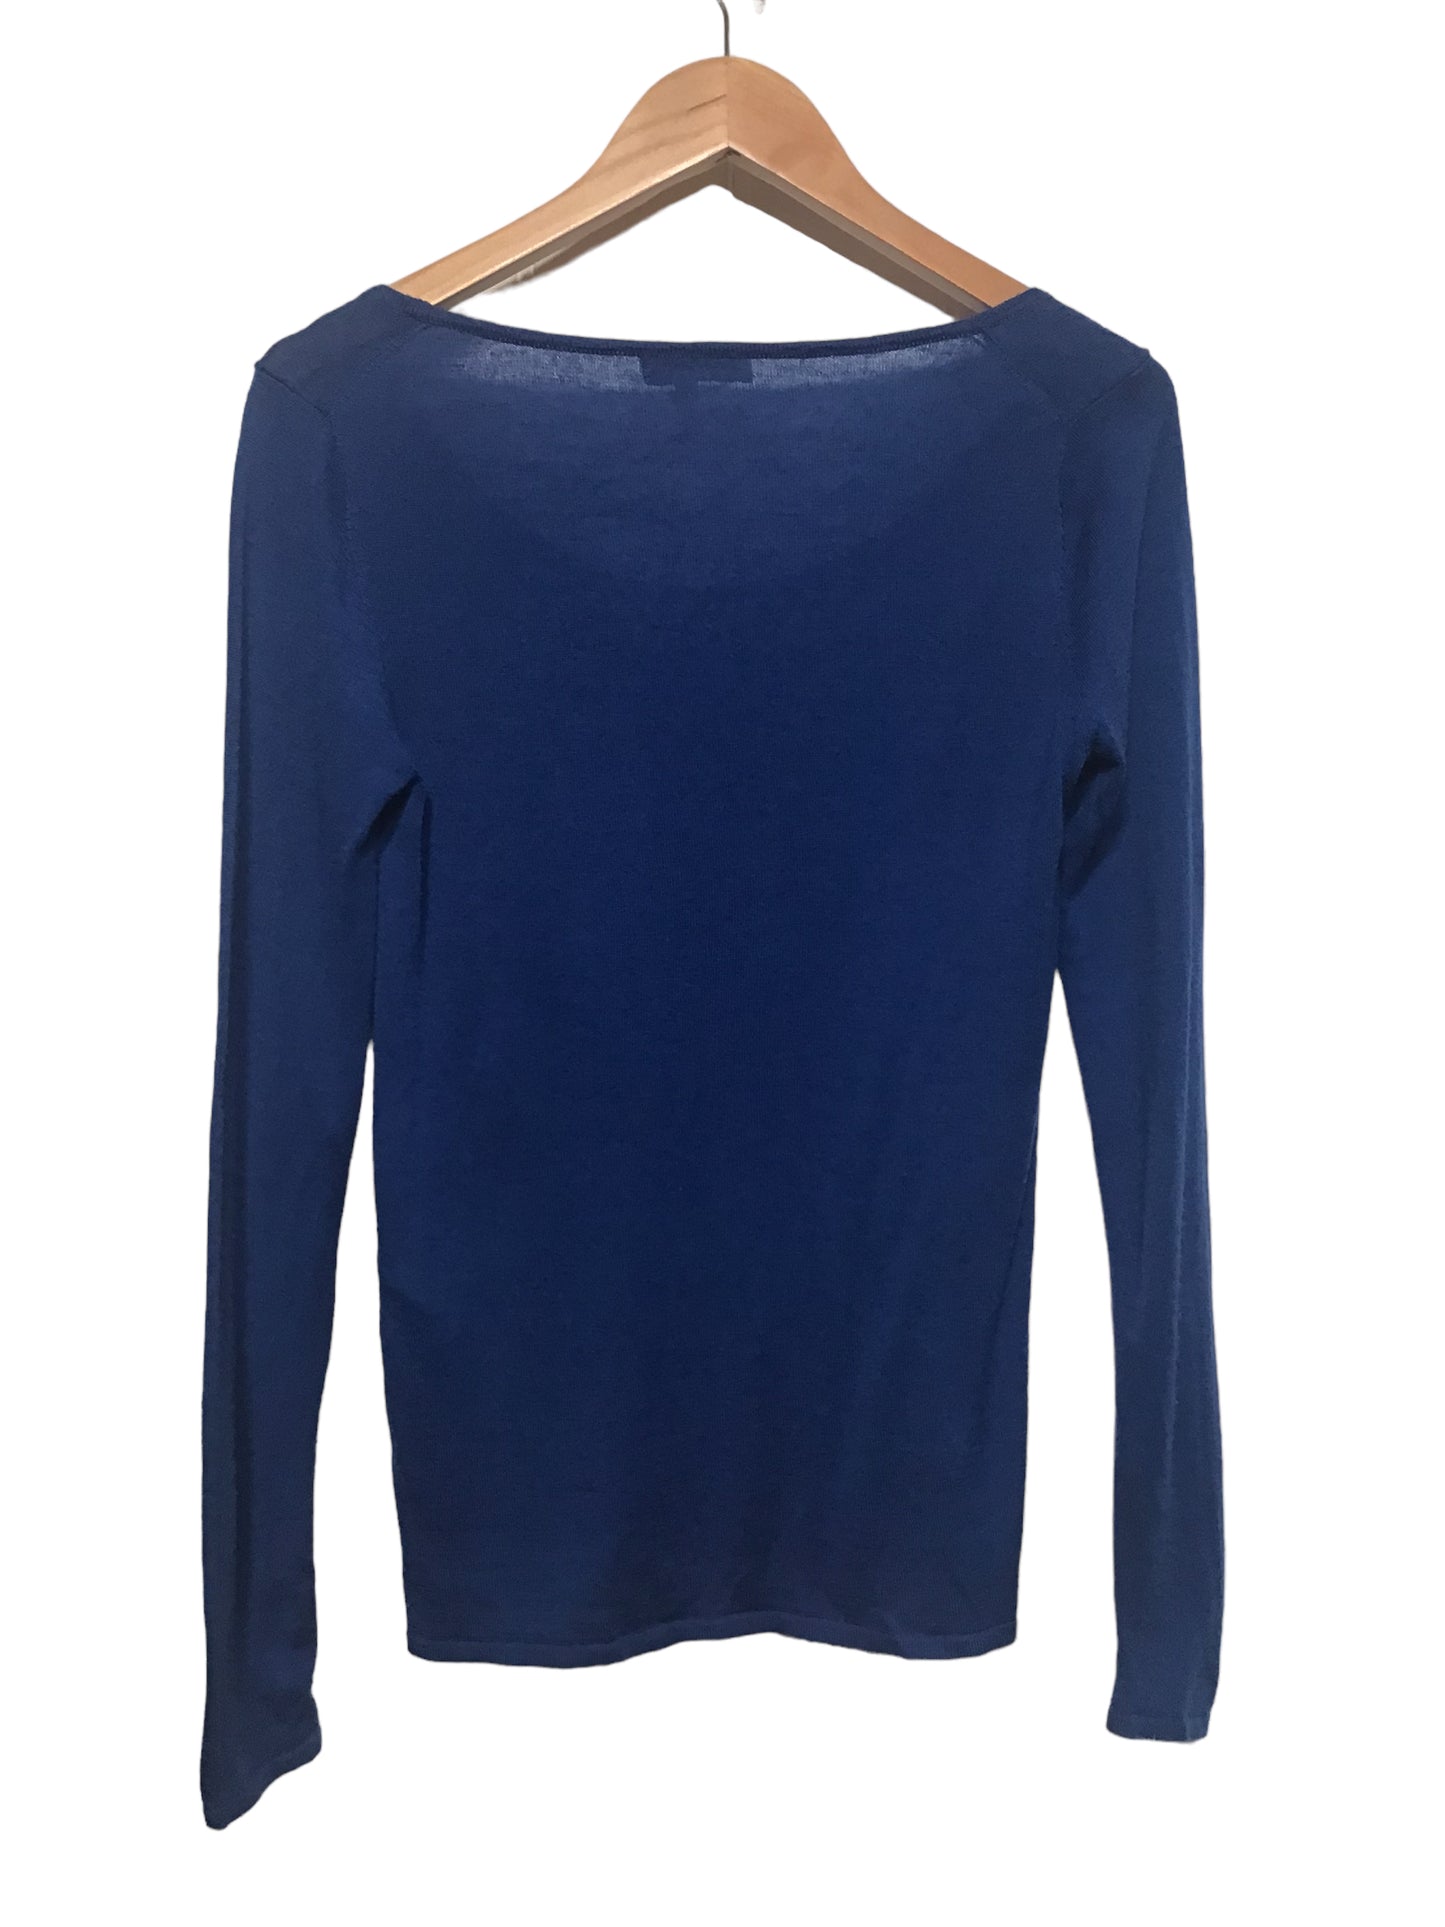 Hobbs Knitted Sweatshirt (Size S)